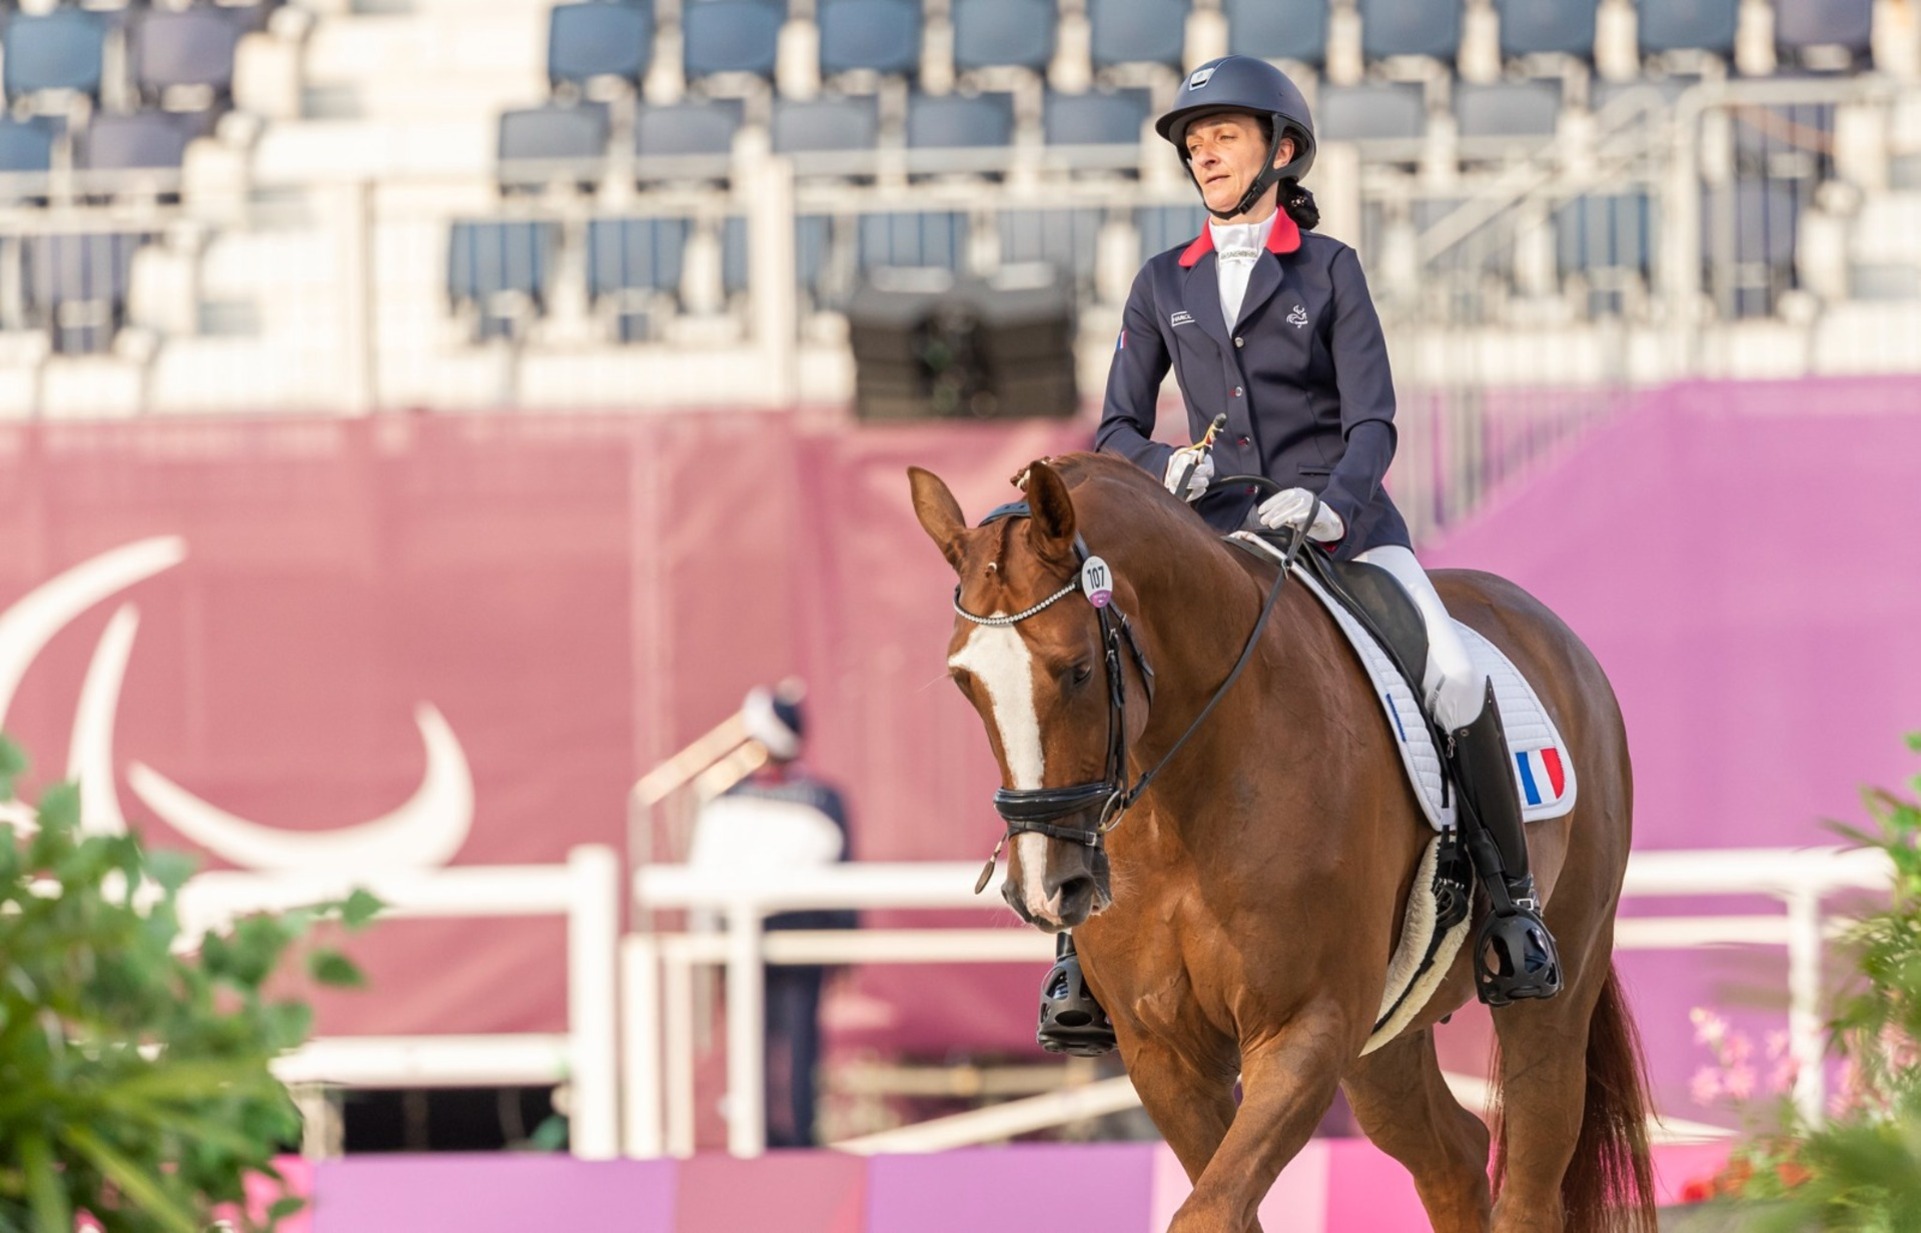 Résultats mitigés en équitation pour les Françaises aux Jeux paralympiques.